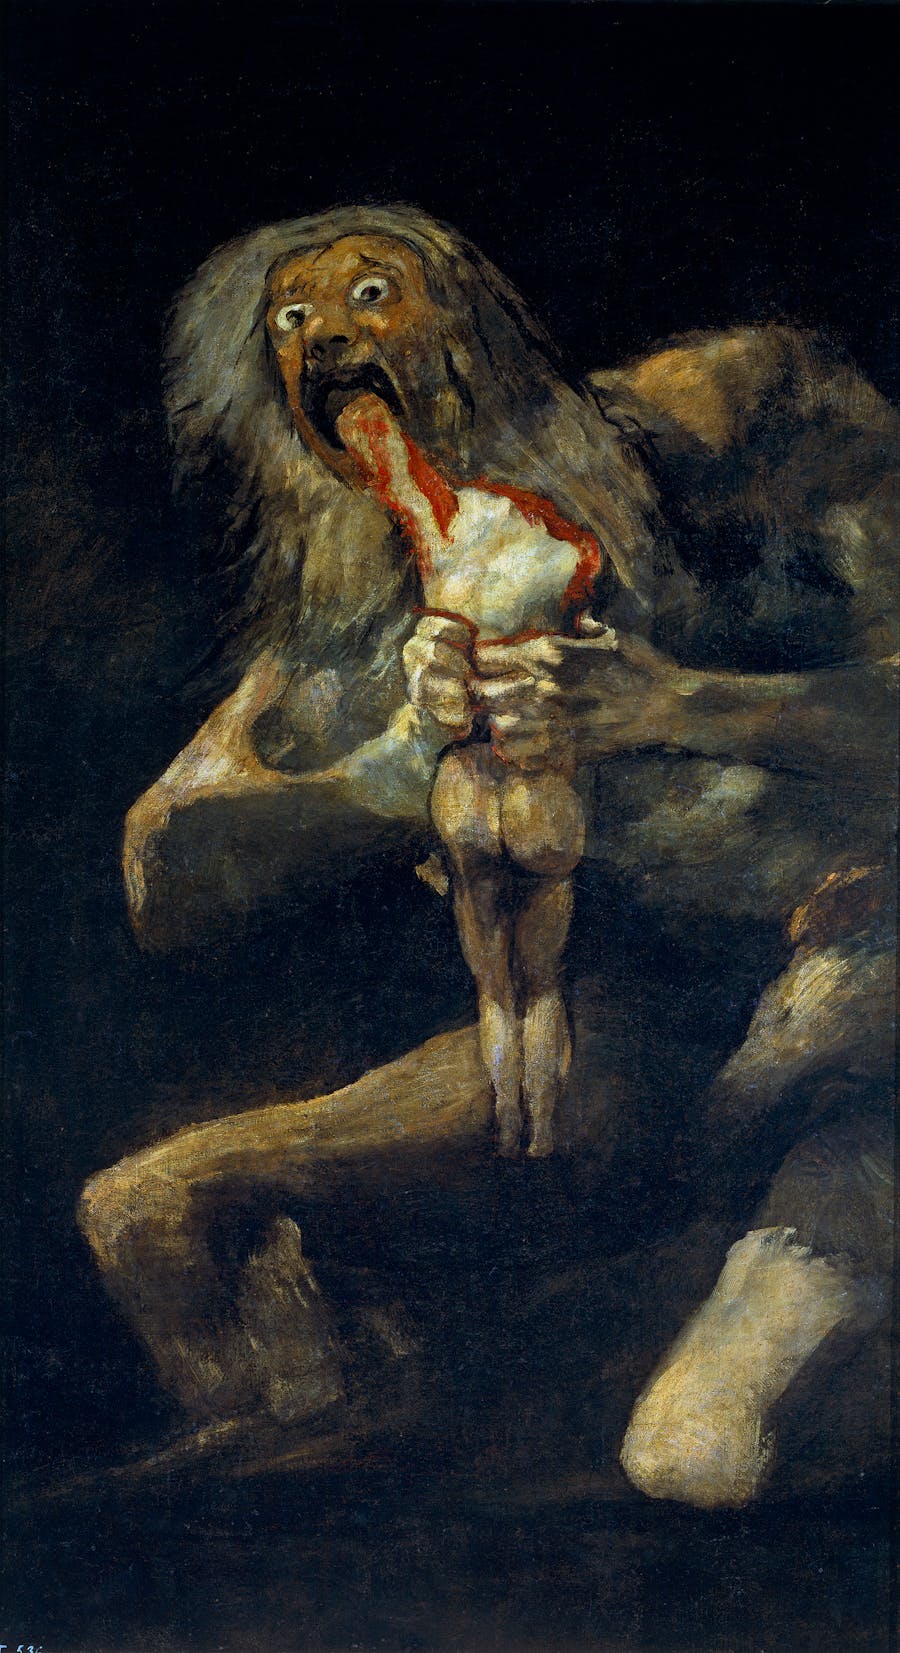 Francisco de Goya, Saturn devours his son, around 1820. Public domain image